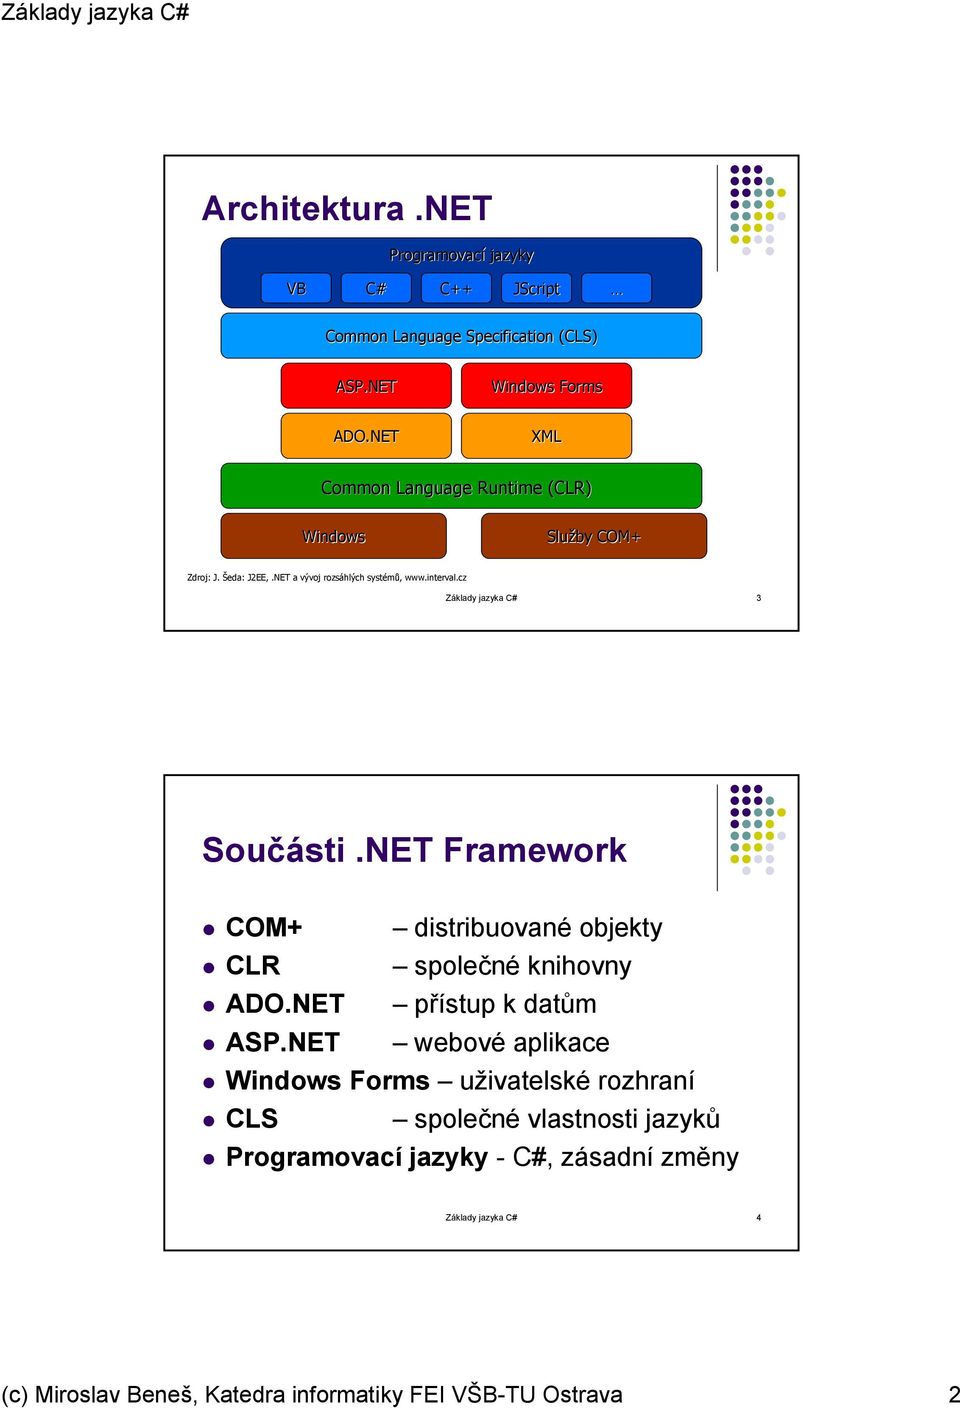 cz Základy jazyka C# 3 Součásti.NET Framework COM+ distribuované objekty CLR společné knihovny ADO.NET přístup k datům ASP.